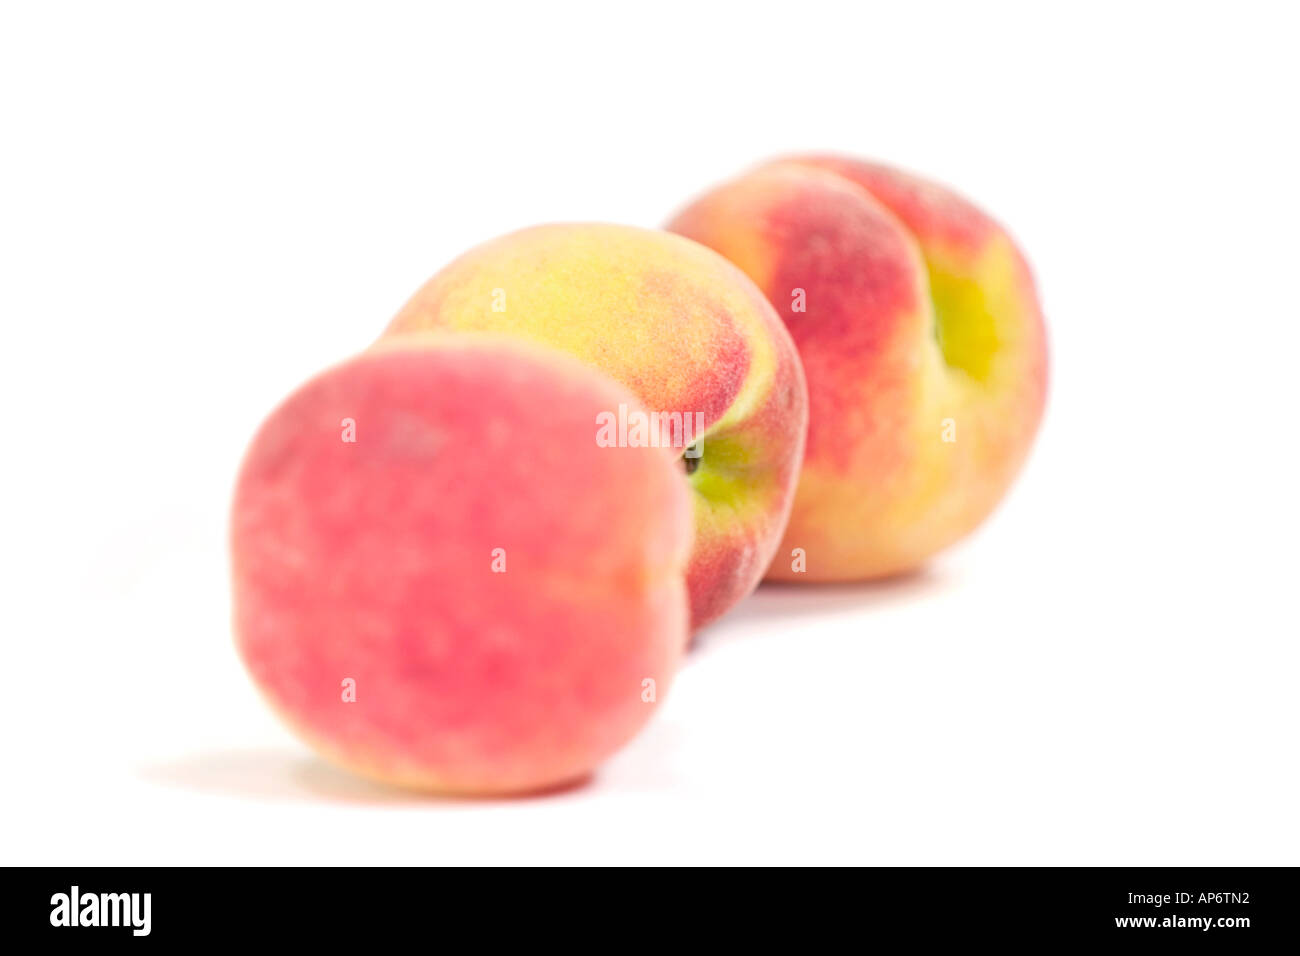 three peaches on a white background Stock Photo